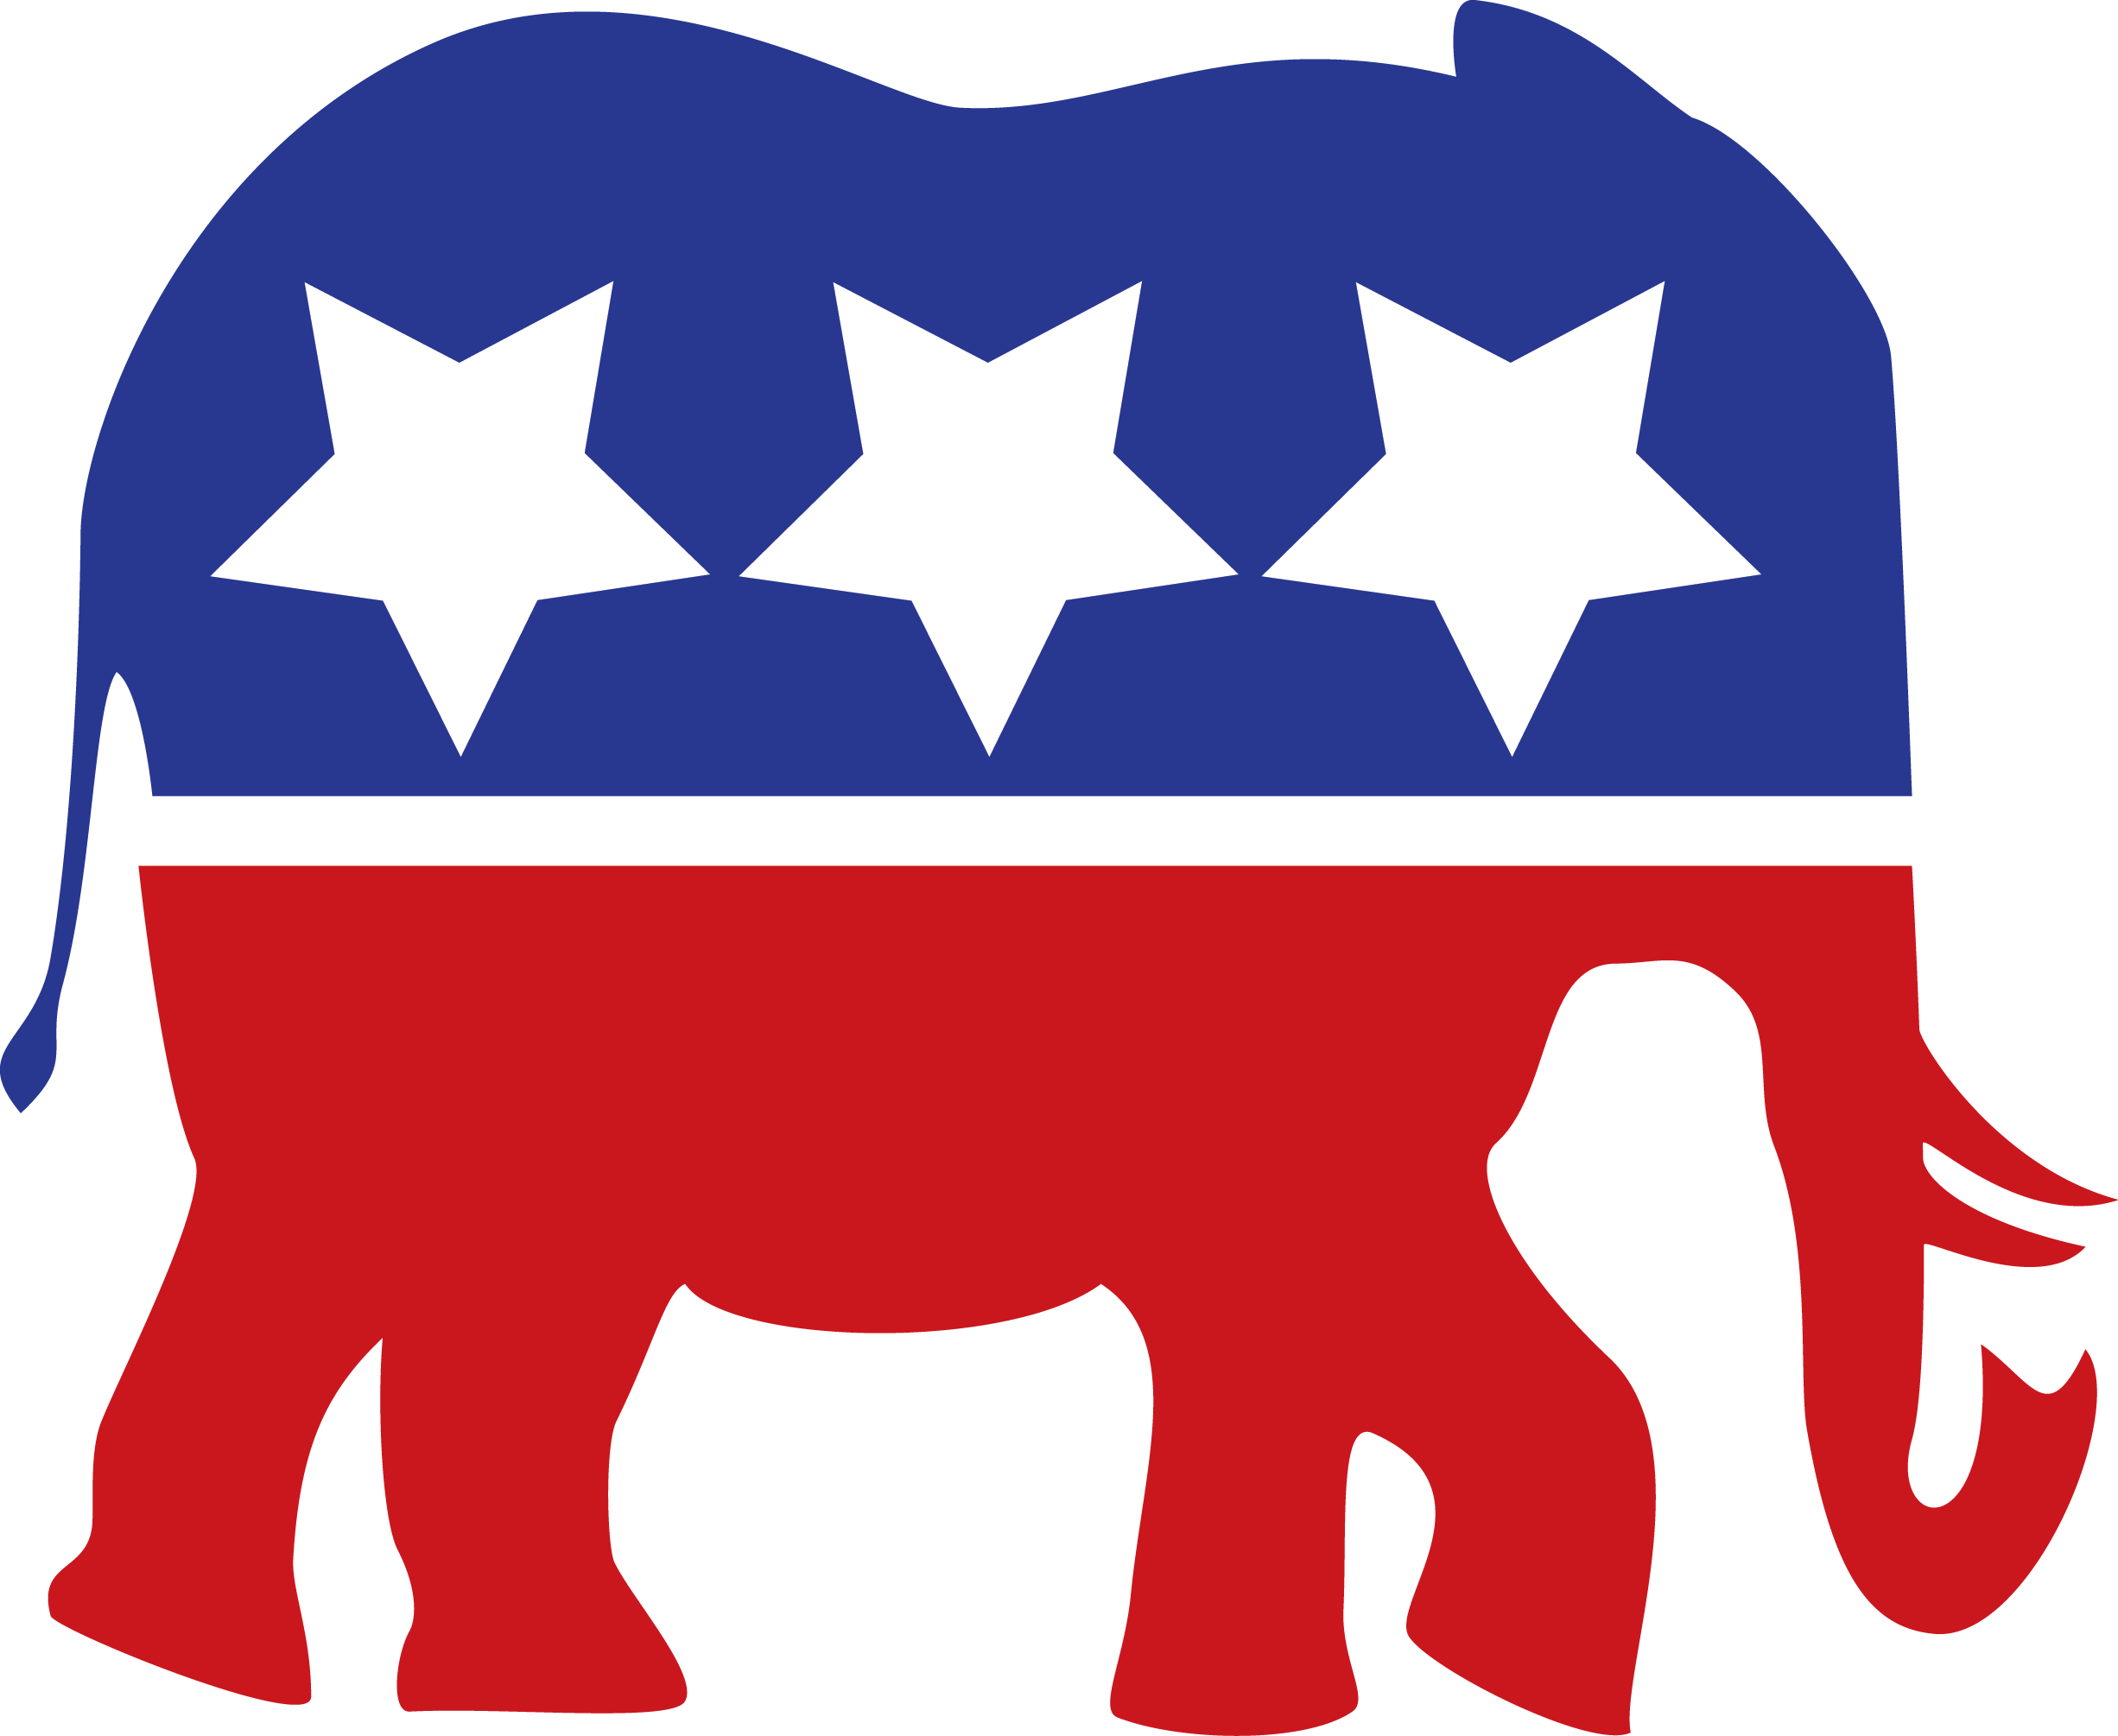 republican_party_logo_redesign ...